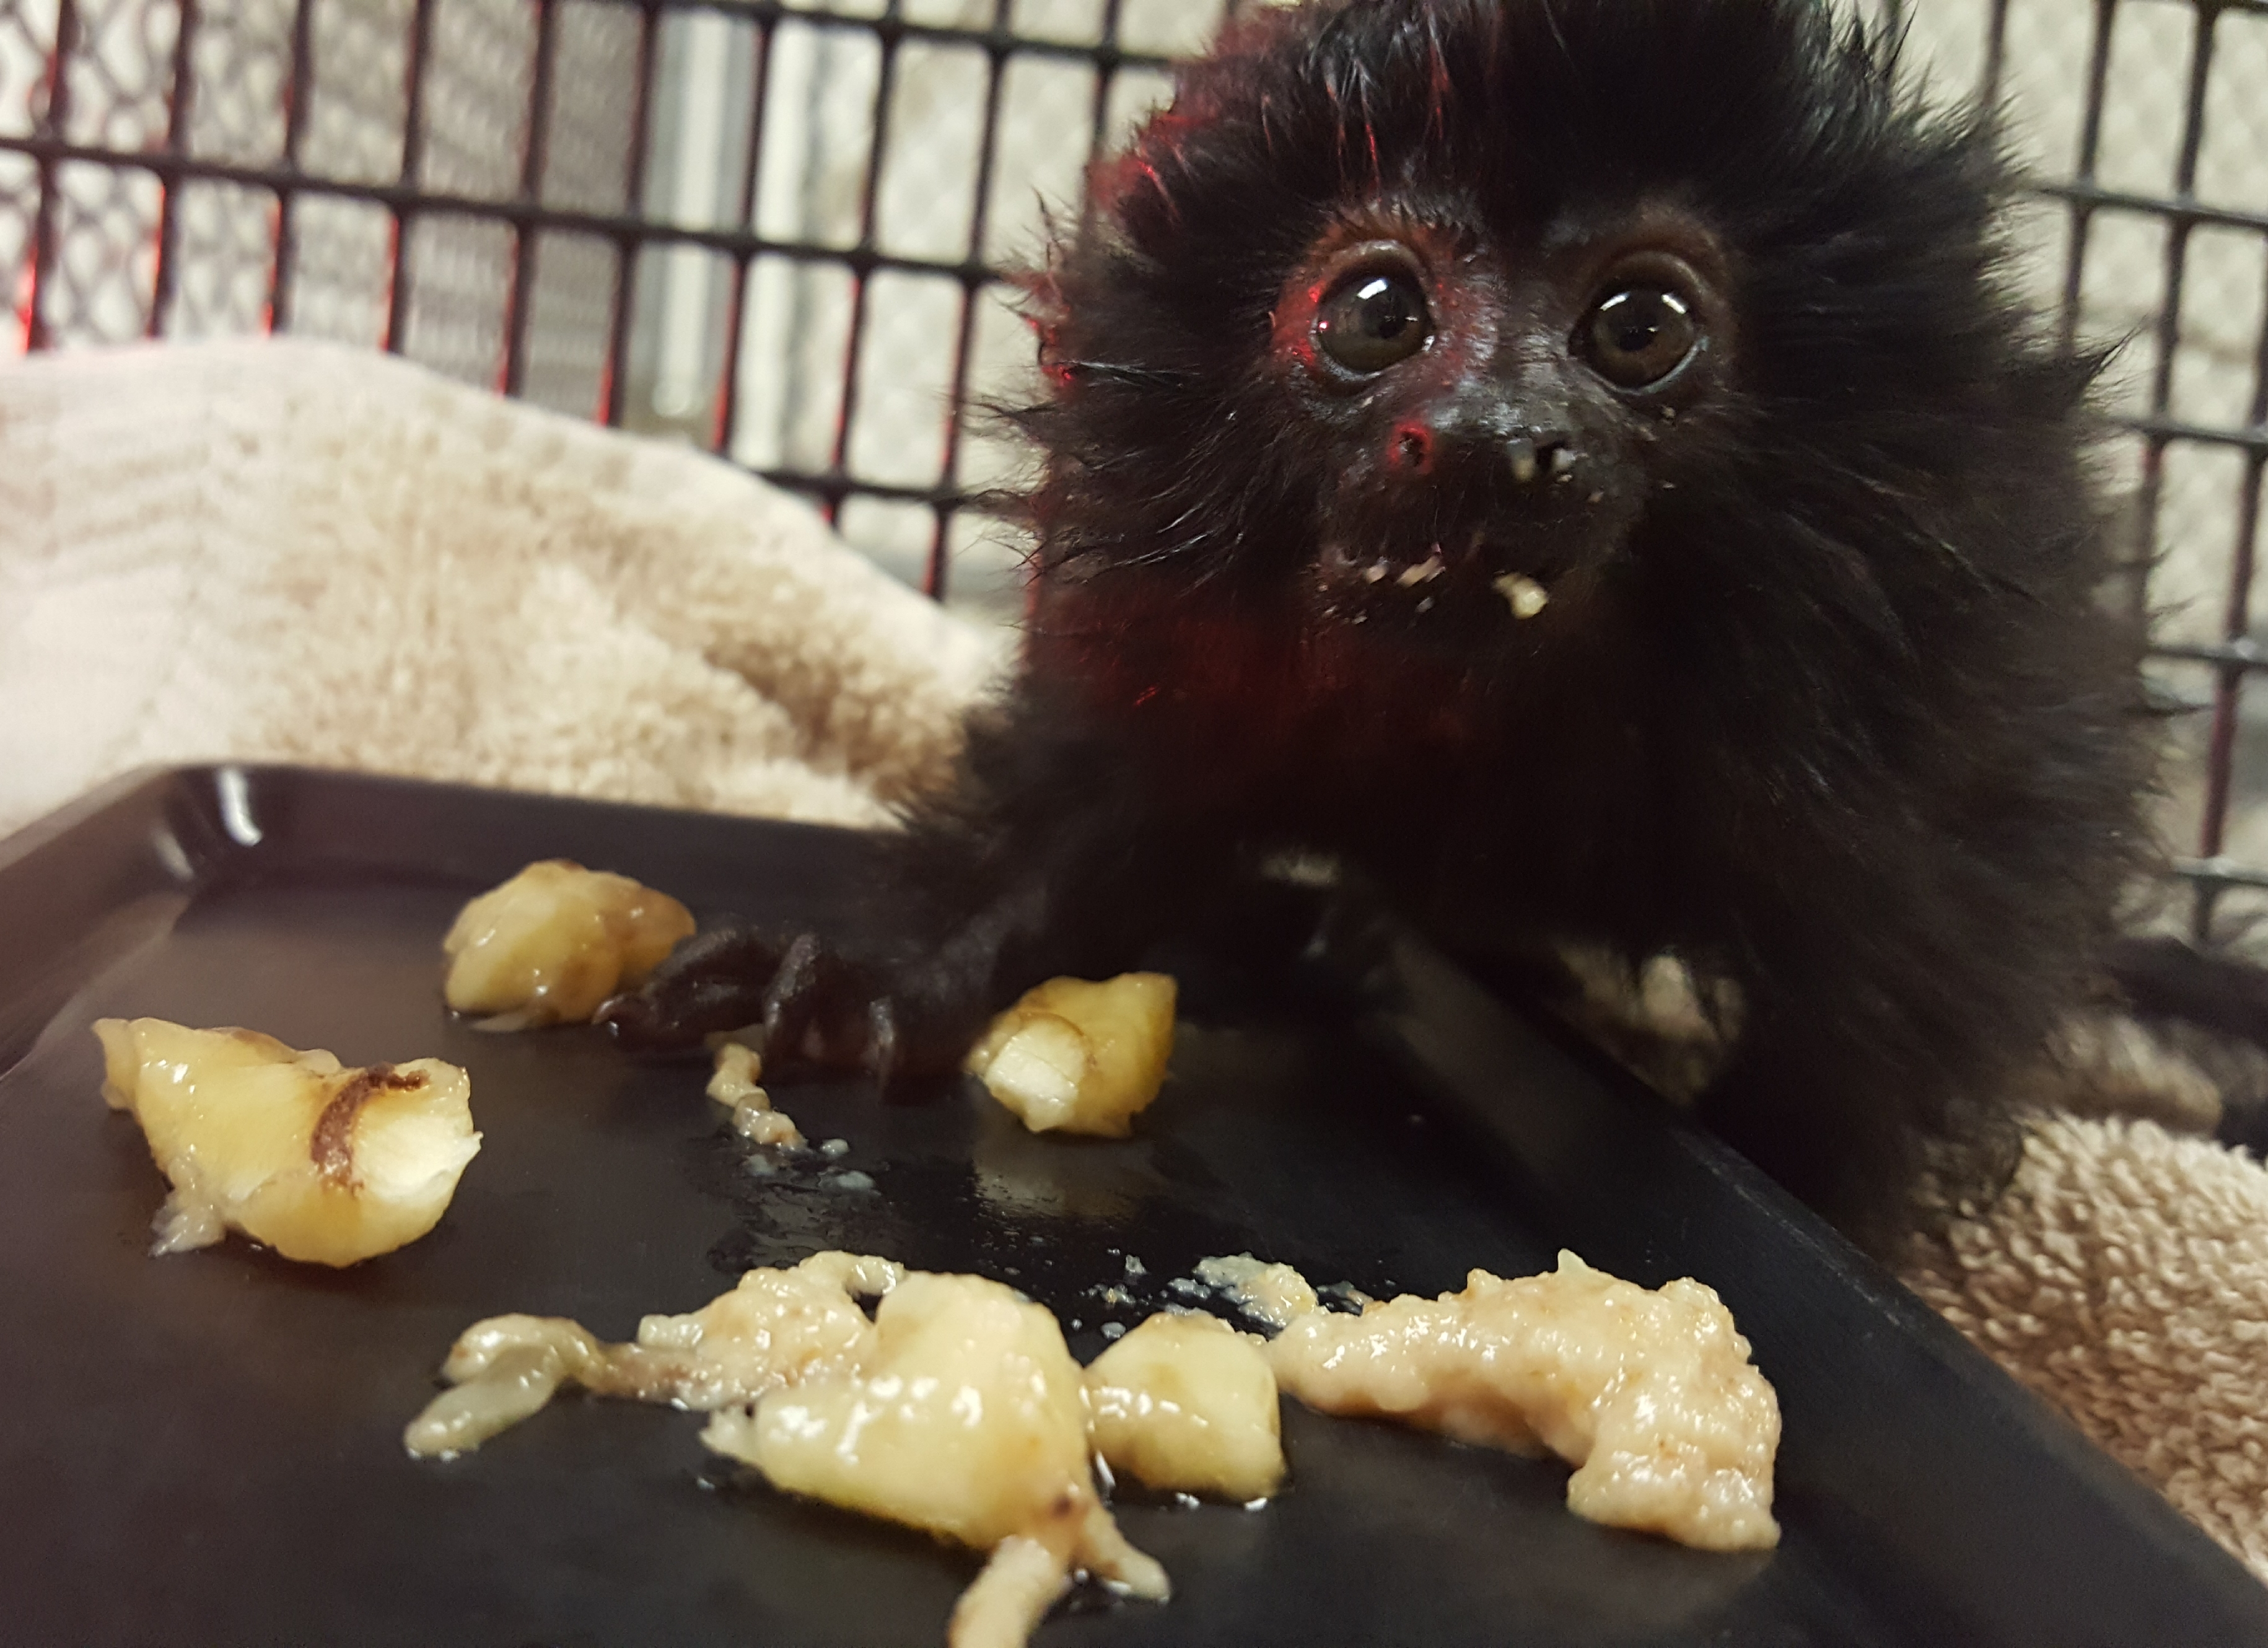 Animal Professionals Hand-Raising Tiny Goeldi's Monkey - The